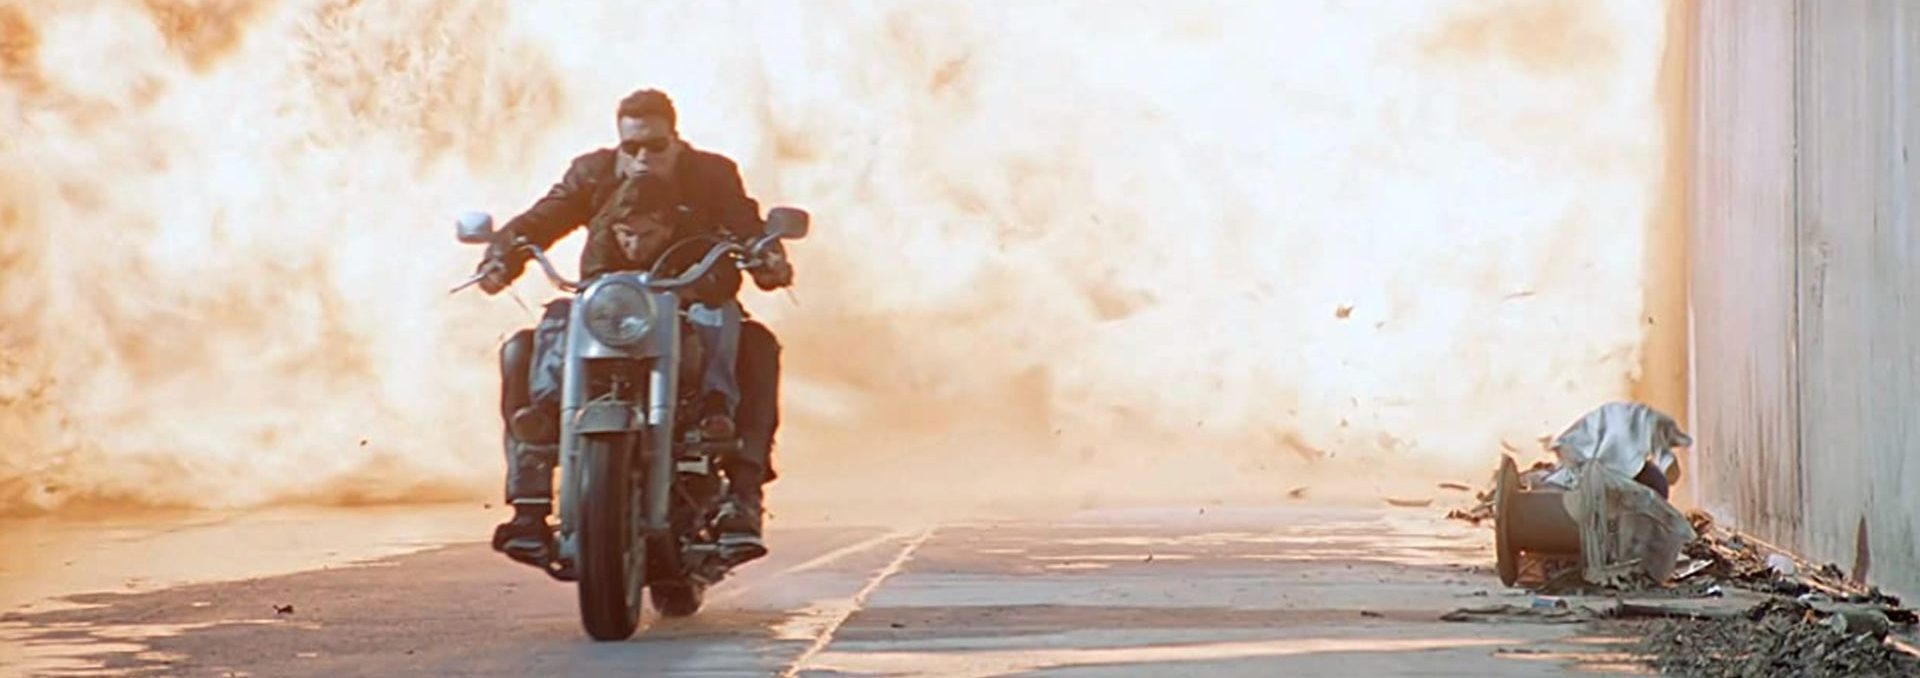 Arnold Schwarzenegger als TERMINATOR mit Edward Furlong auf einem Motorrad. Hinter ihnen ein Flammenmeer.